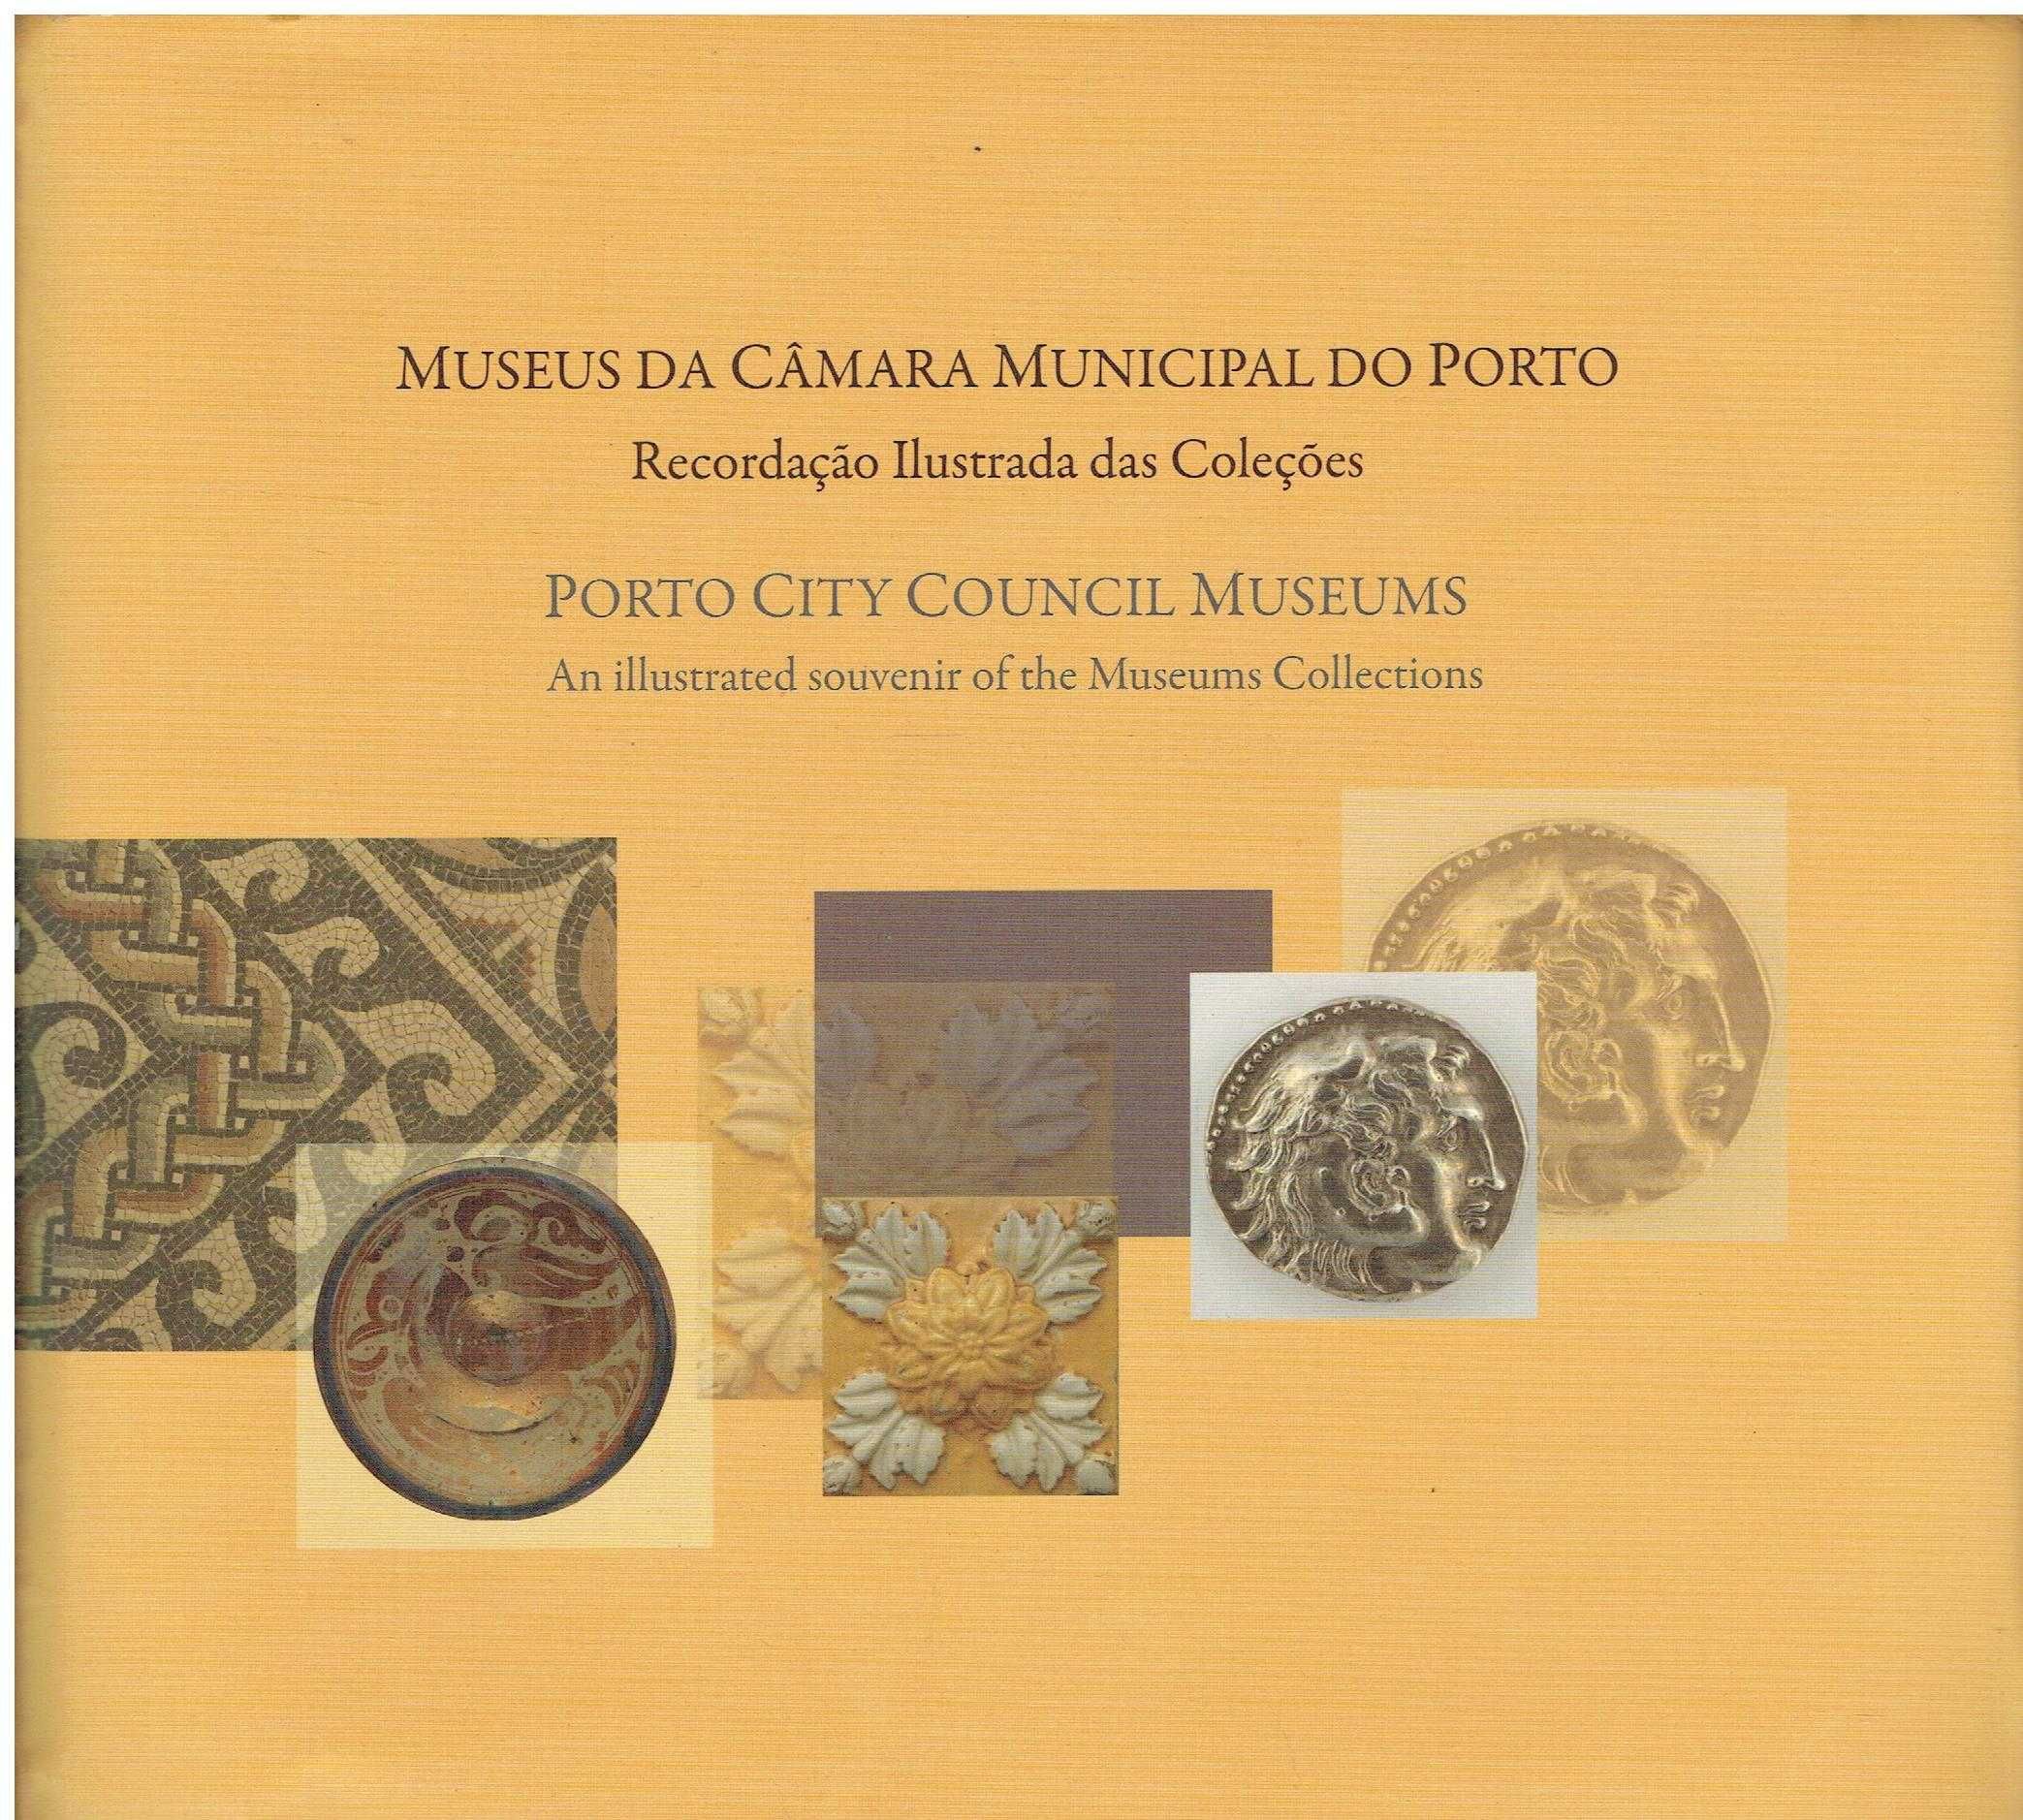 7331

Museus da Câmara Municipal do Porto